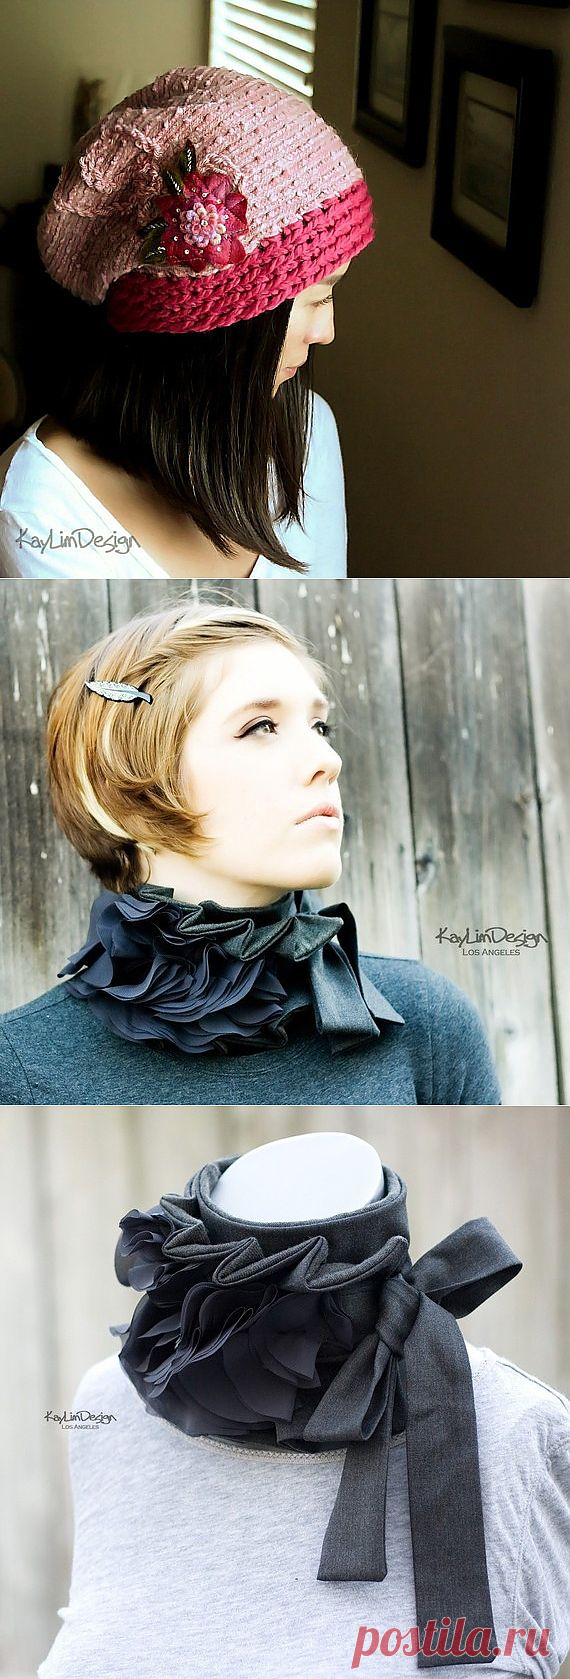 Шапочки и шарфы KayLimDesign / Головные уборы / Модный сайт о стильной переделке одежды и интерьера